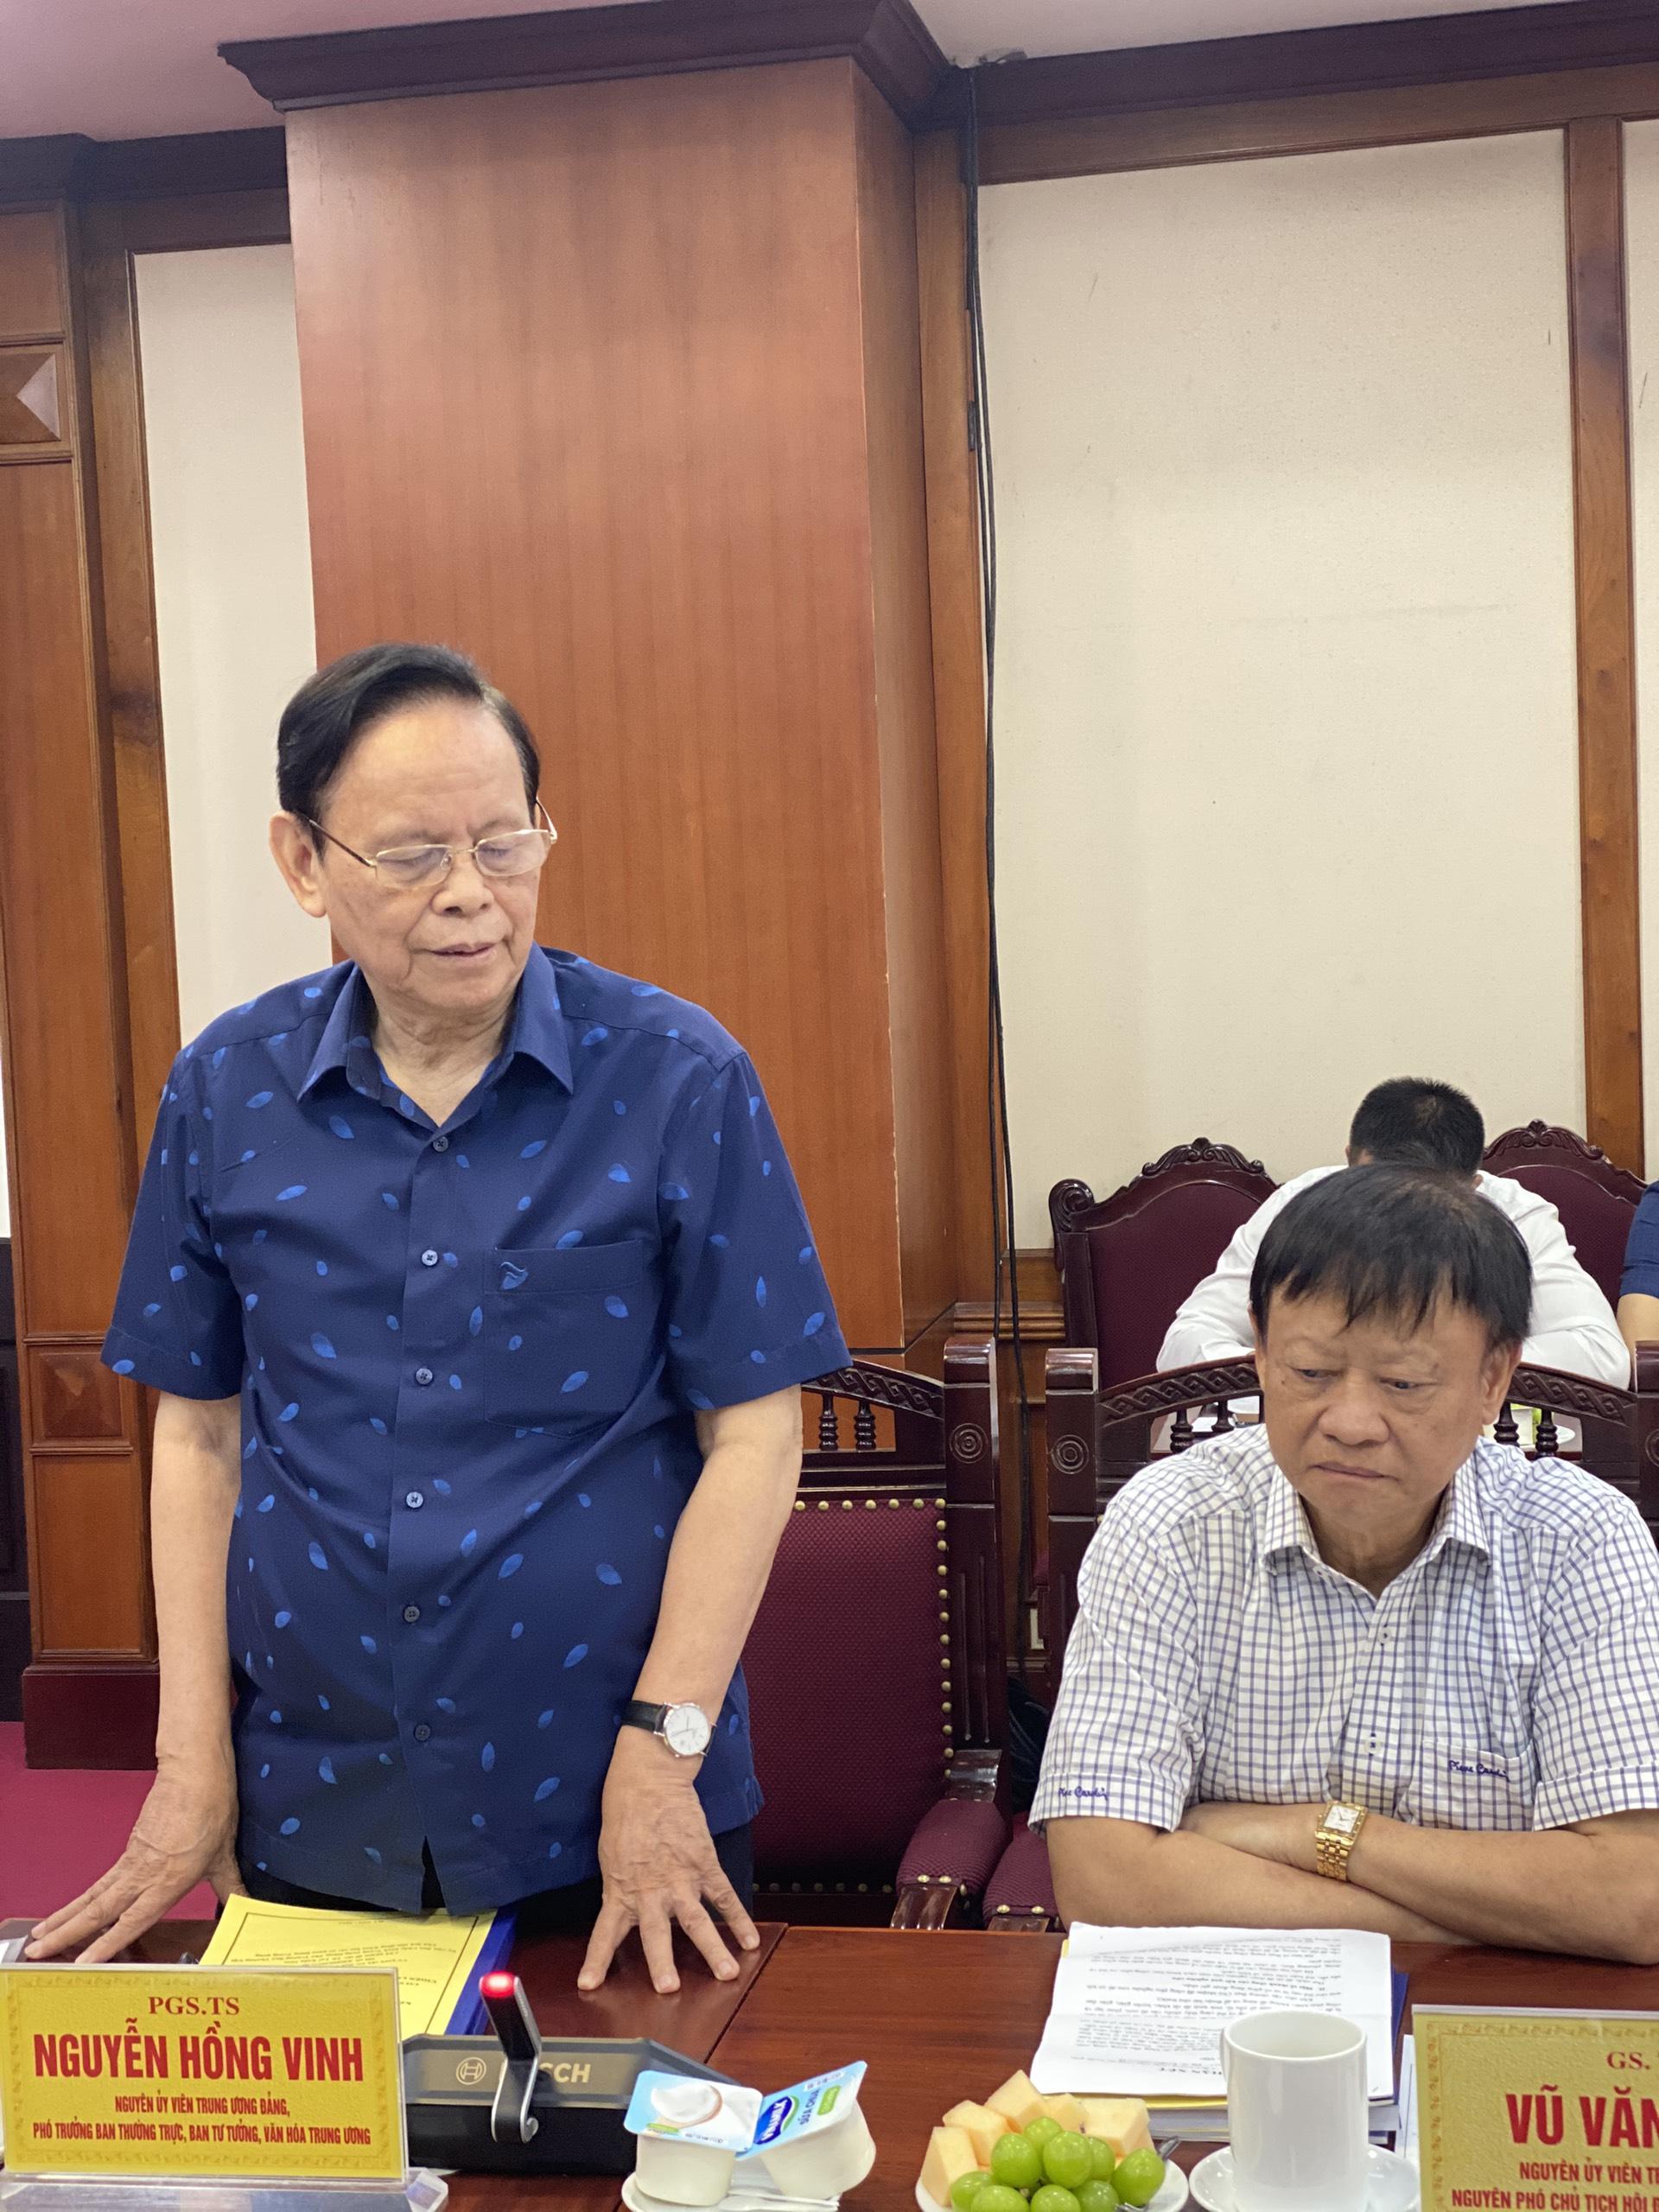 PGS. TS. Nguyễn Hồng Vinh, nguyên Ủy viên Trung ương Đảng, nguyên Phó trưởng ban Thường trực Ban Tư tưởng - Văn hóa Trung ương phát biểu ý kiến tại Hội thảo.